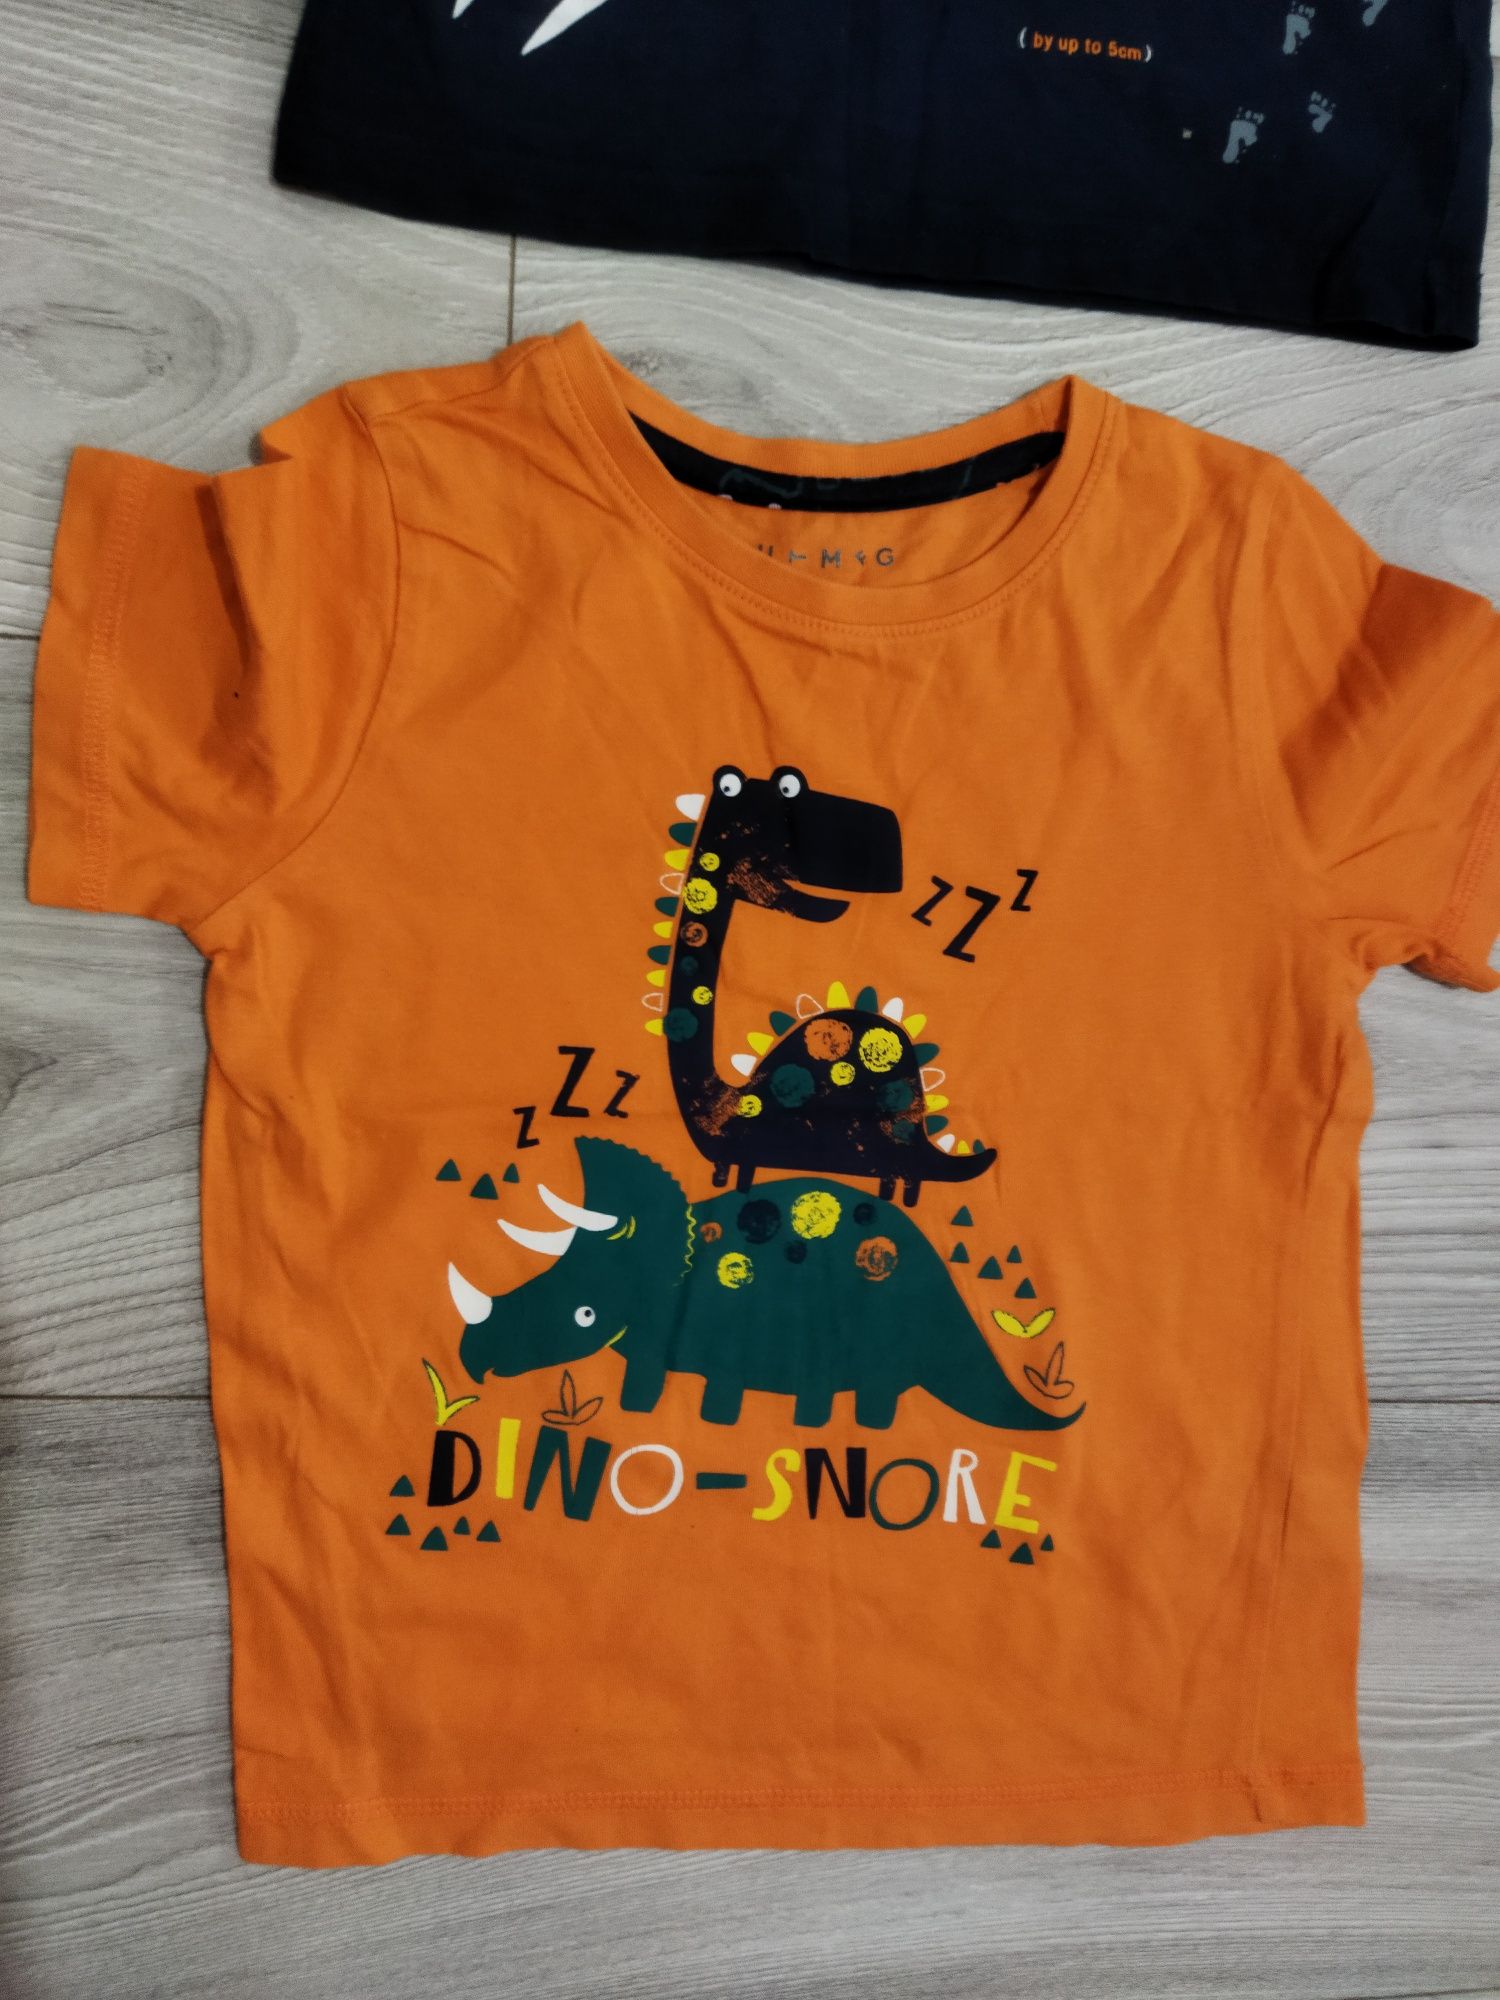 Lot superb 6 tricouri colorate băiat 3-4 ani mărimea 104 firma Nutmeg